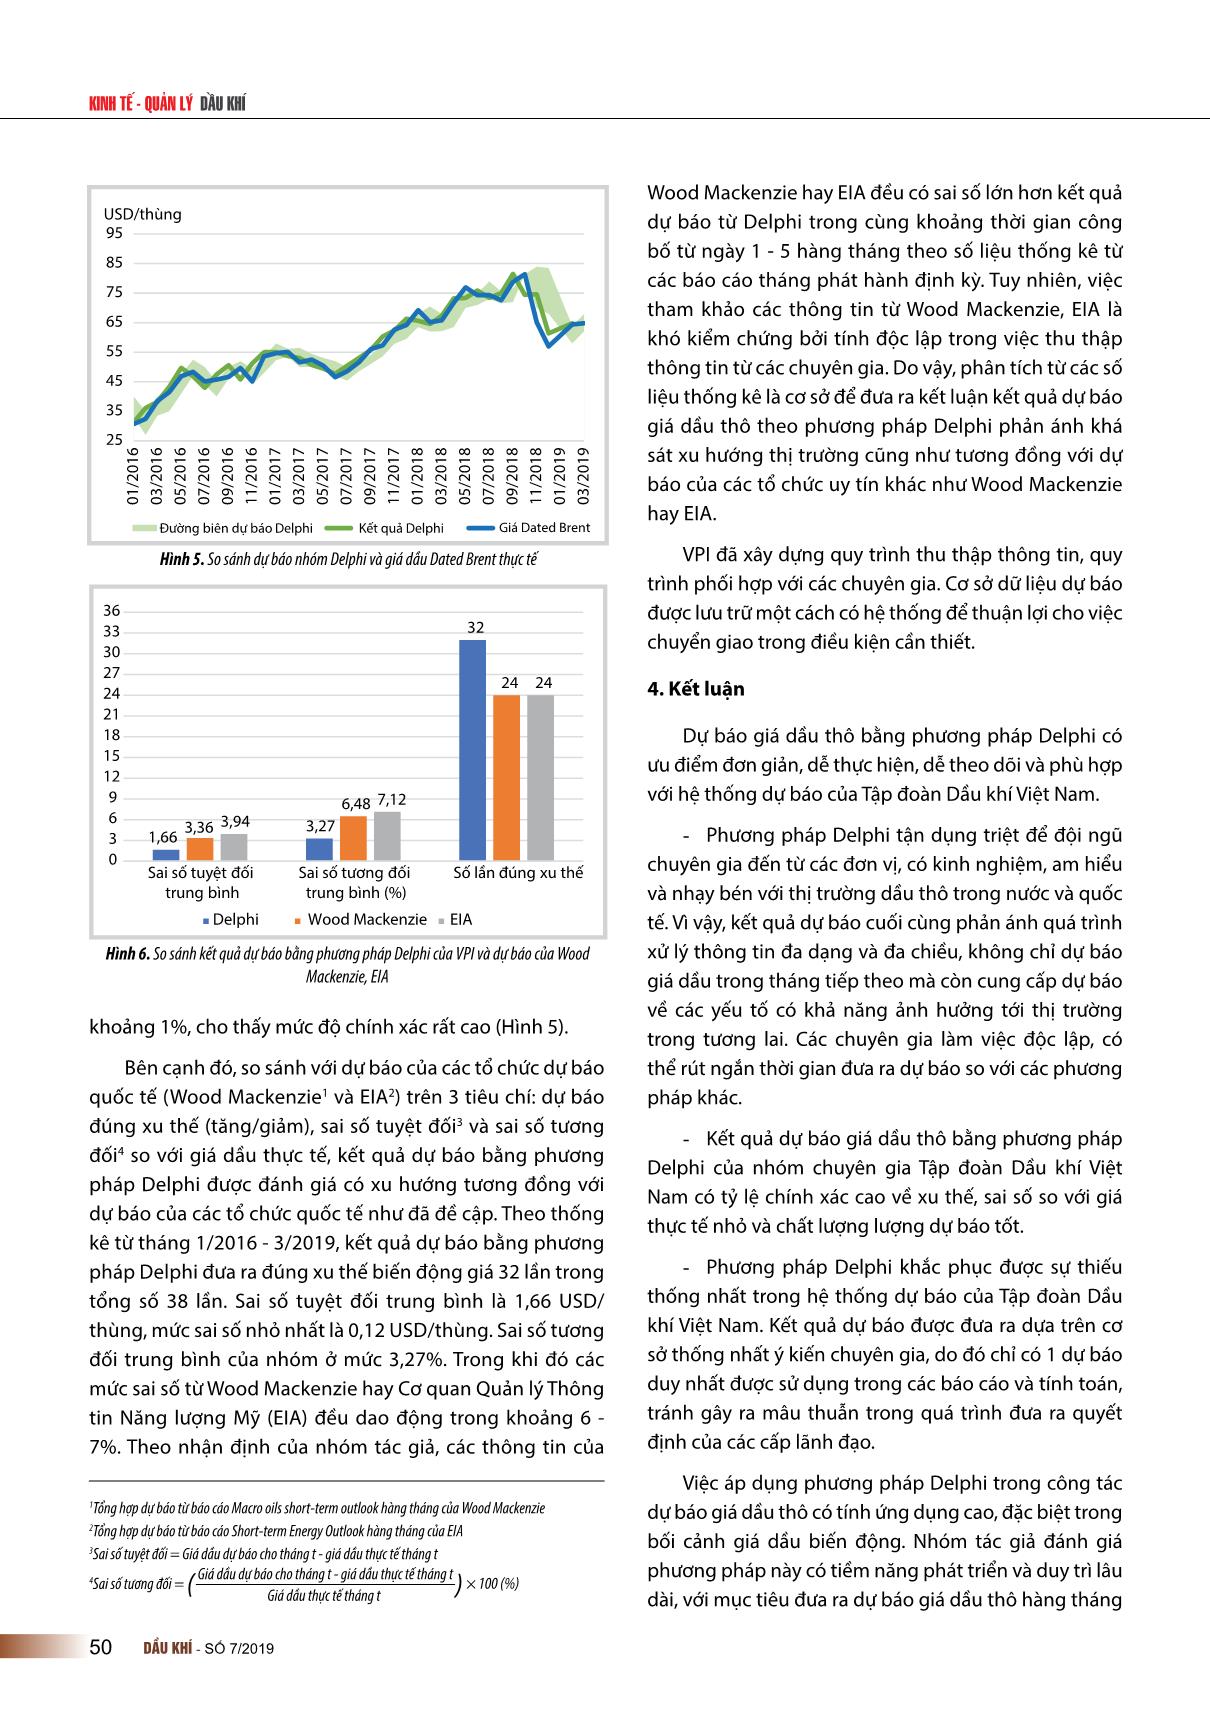 Dự báo giá dầu thô trong giai đoạn thị trường biến động bằng phương pháp Delphi trang 7